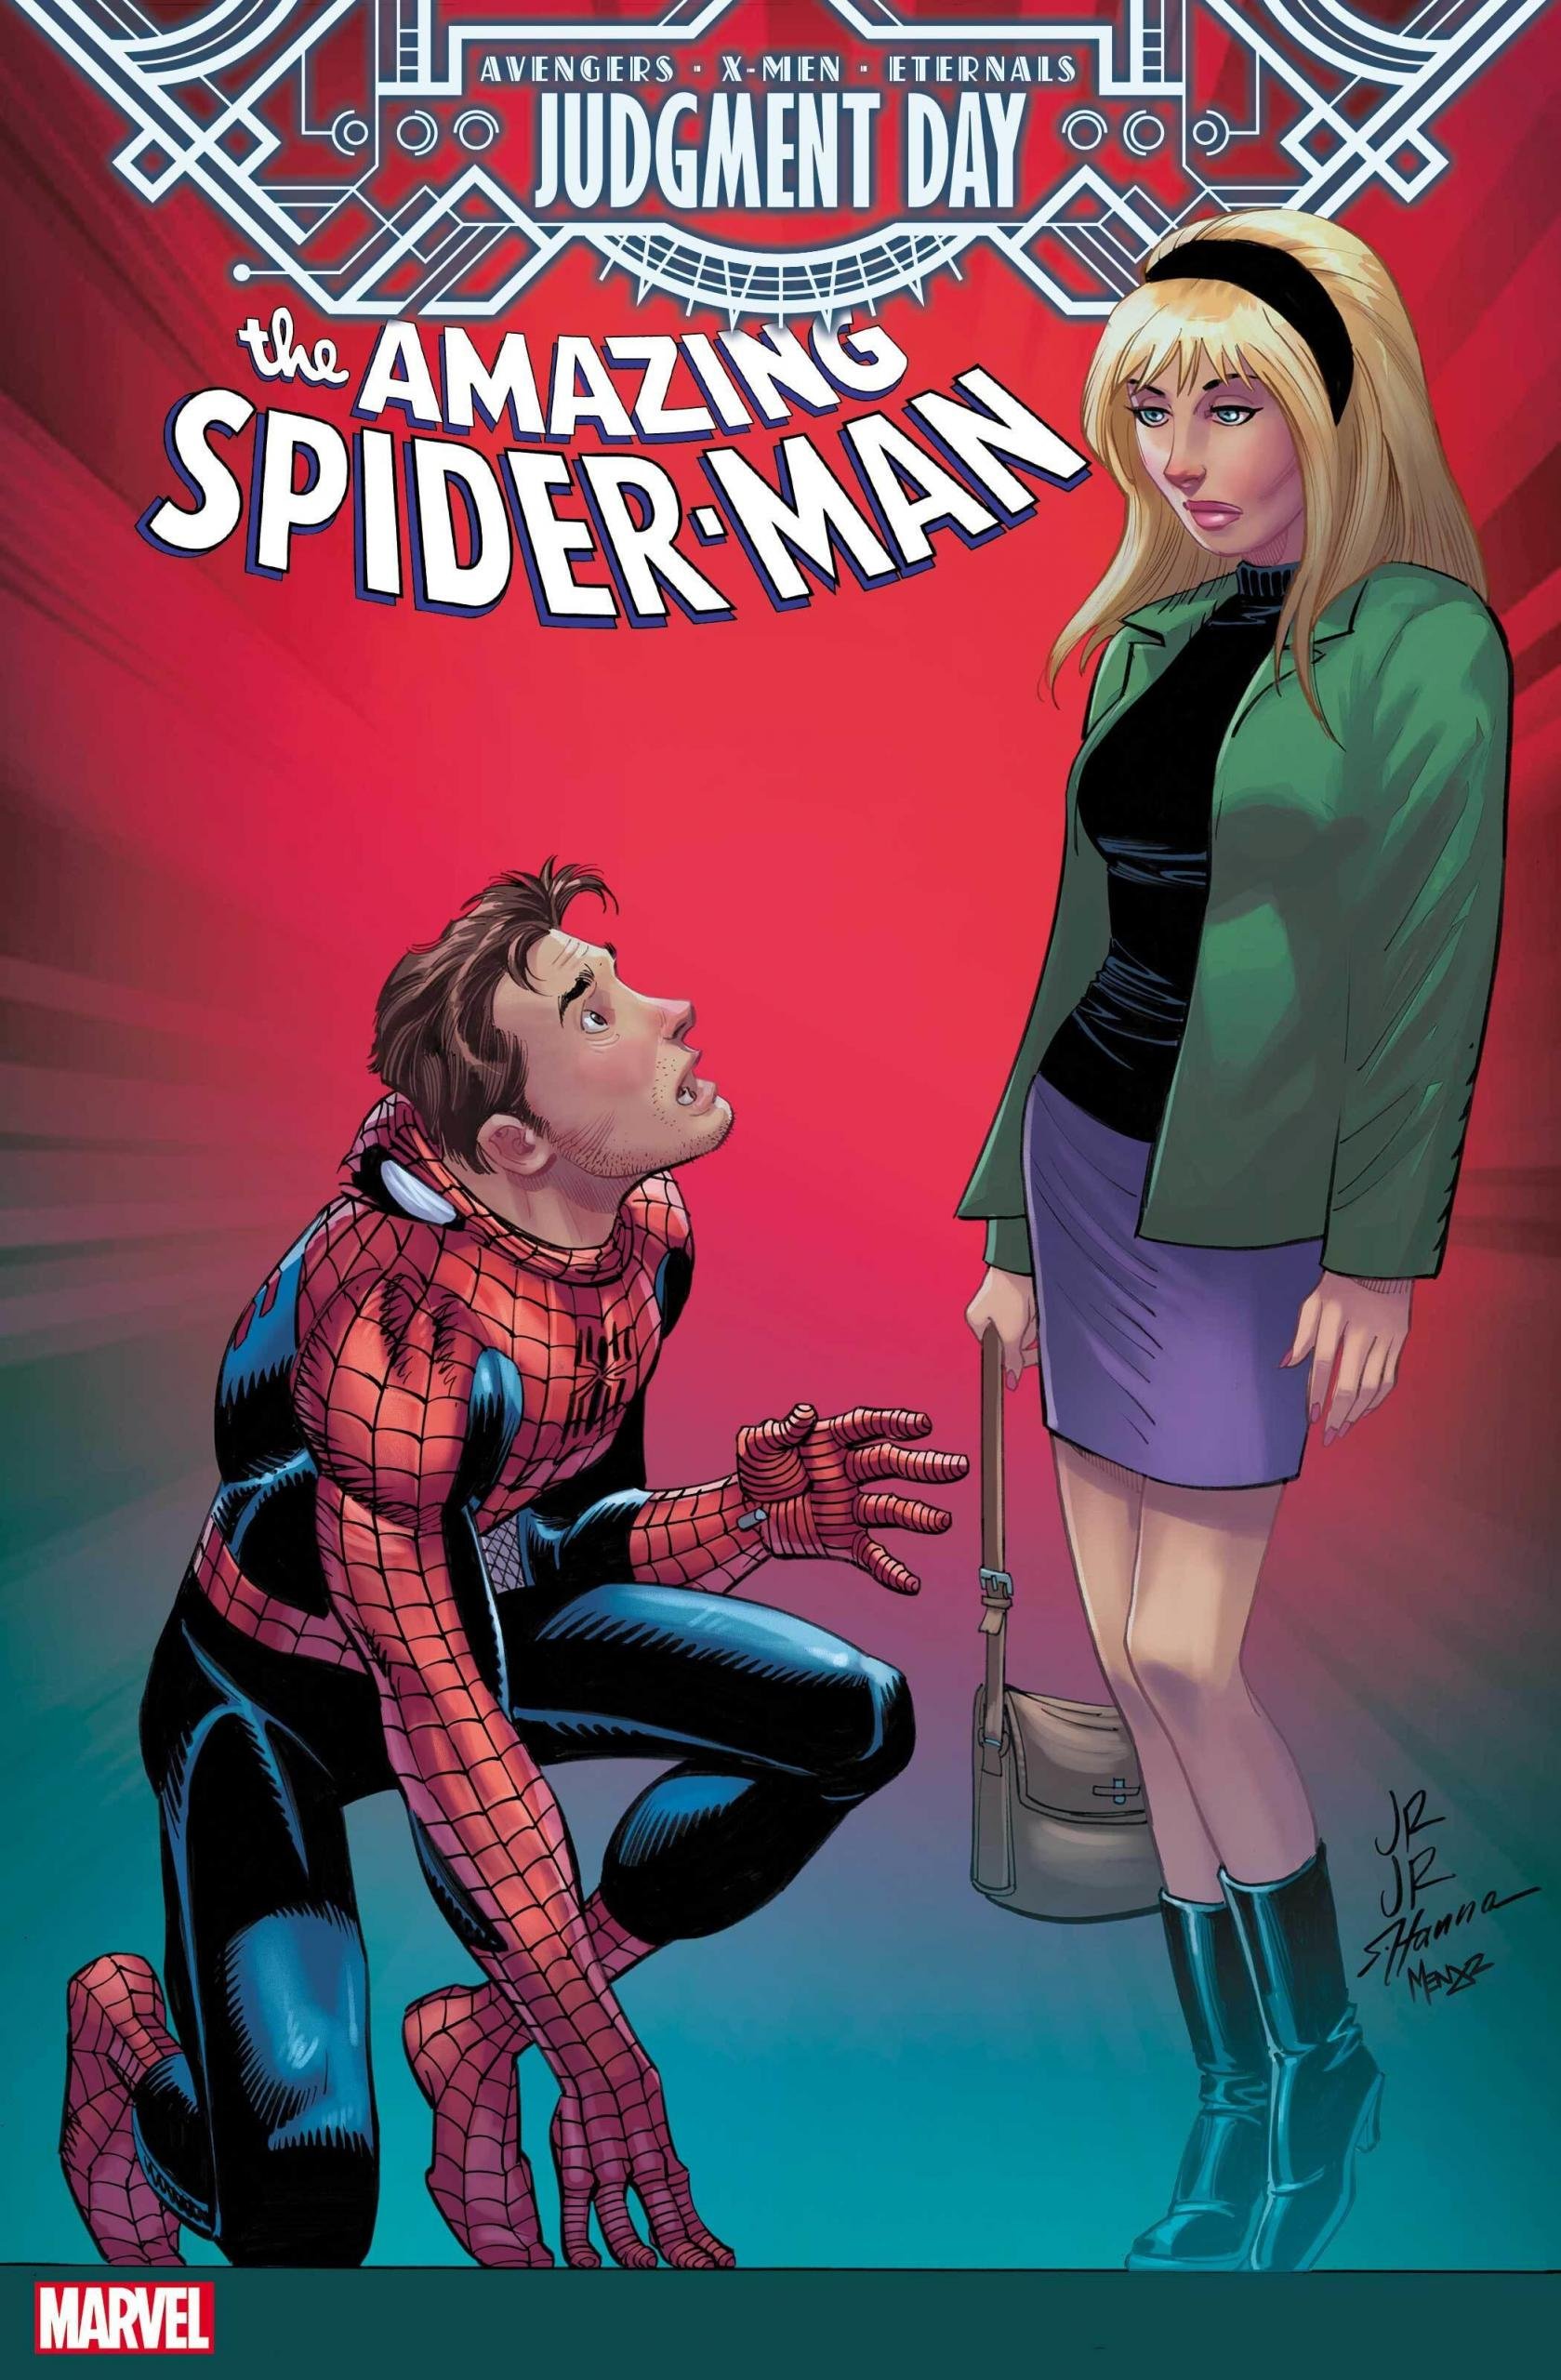 Cover di Amazing Spider-Man 10 di John Romita Jr, tie-in di Judgment Day con il ritorno di Gwen Stacy